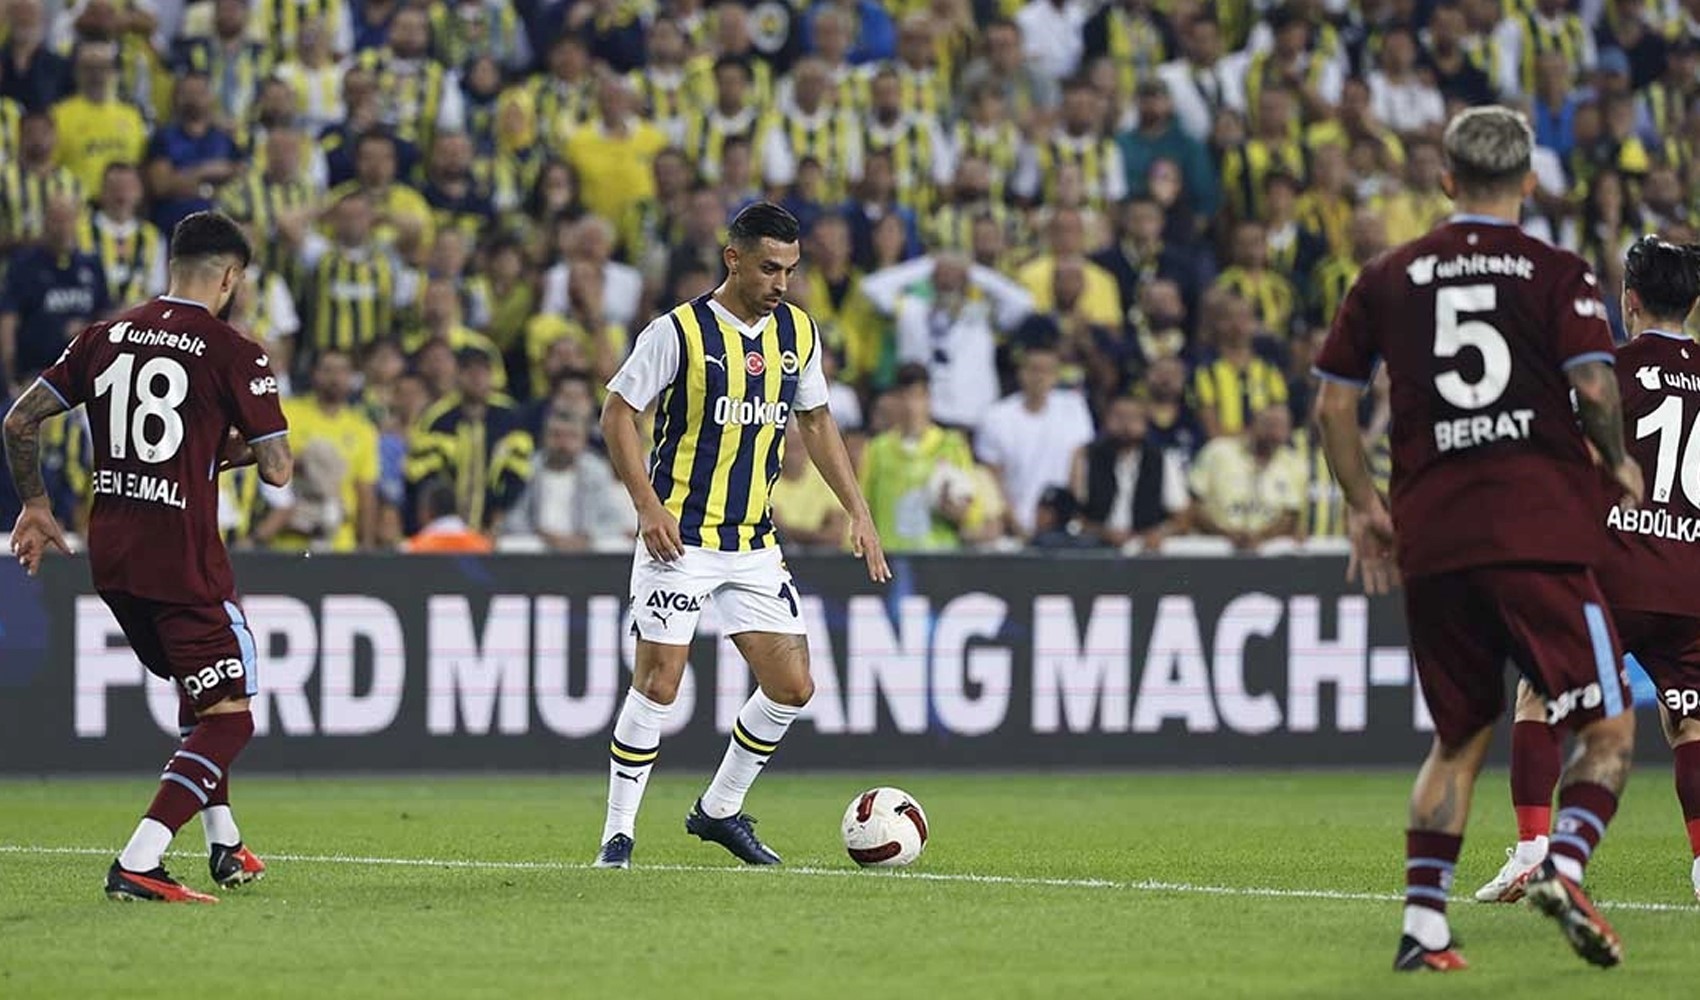 Maç başlamadan polemik başladı: Trabzonspor’dan çok sert Fenerbahçe açıklaması!